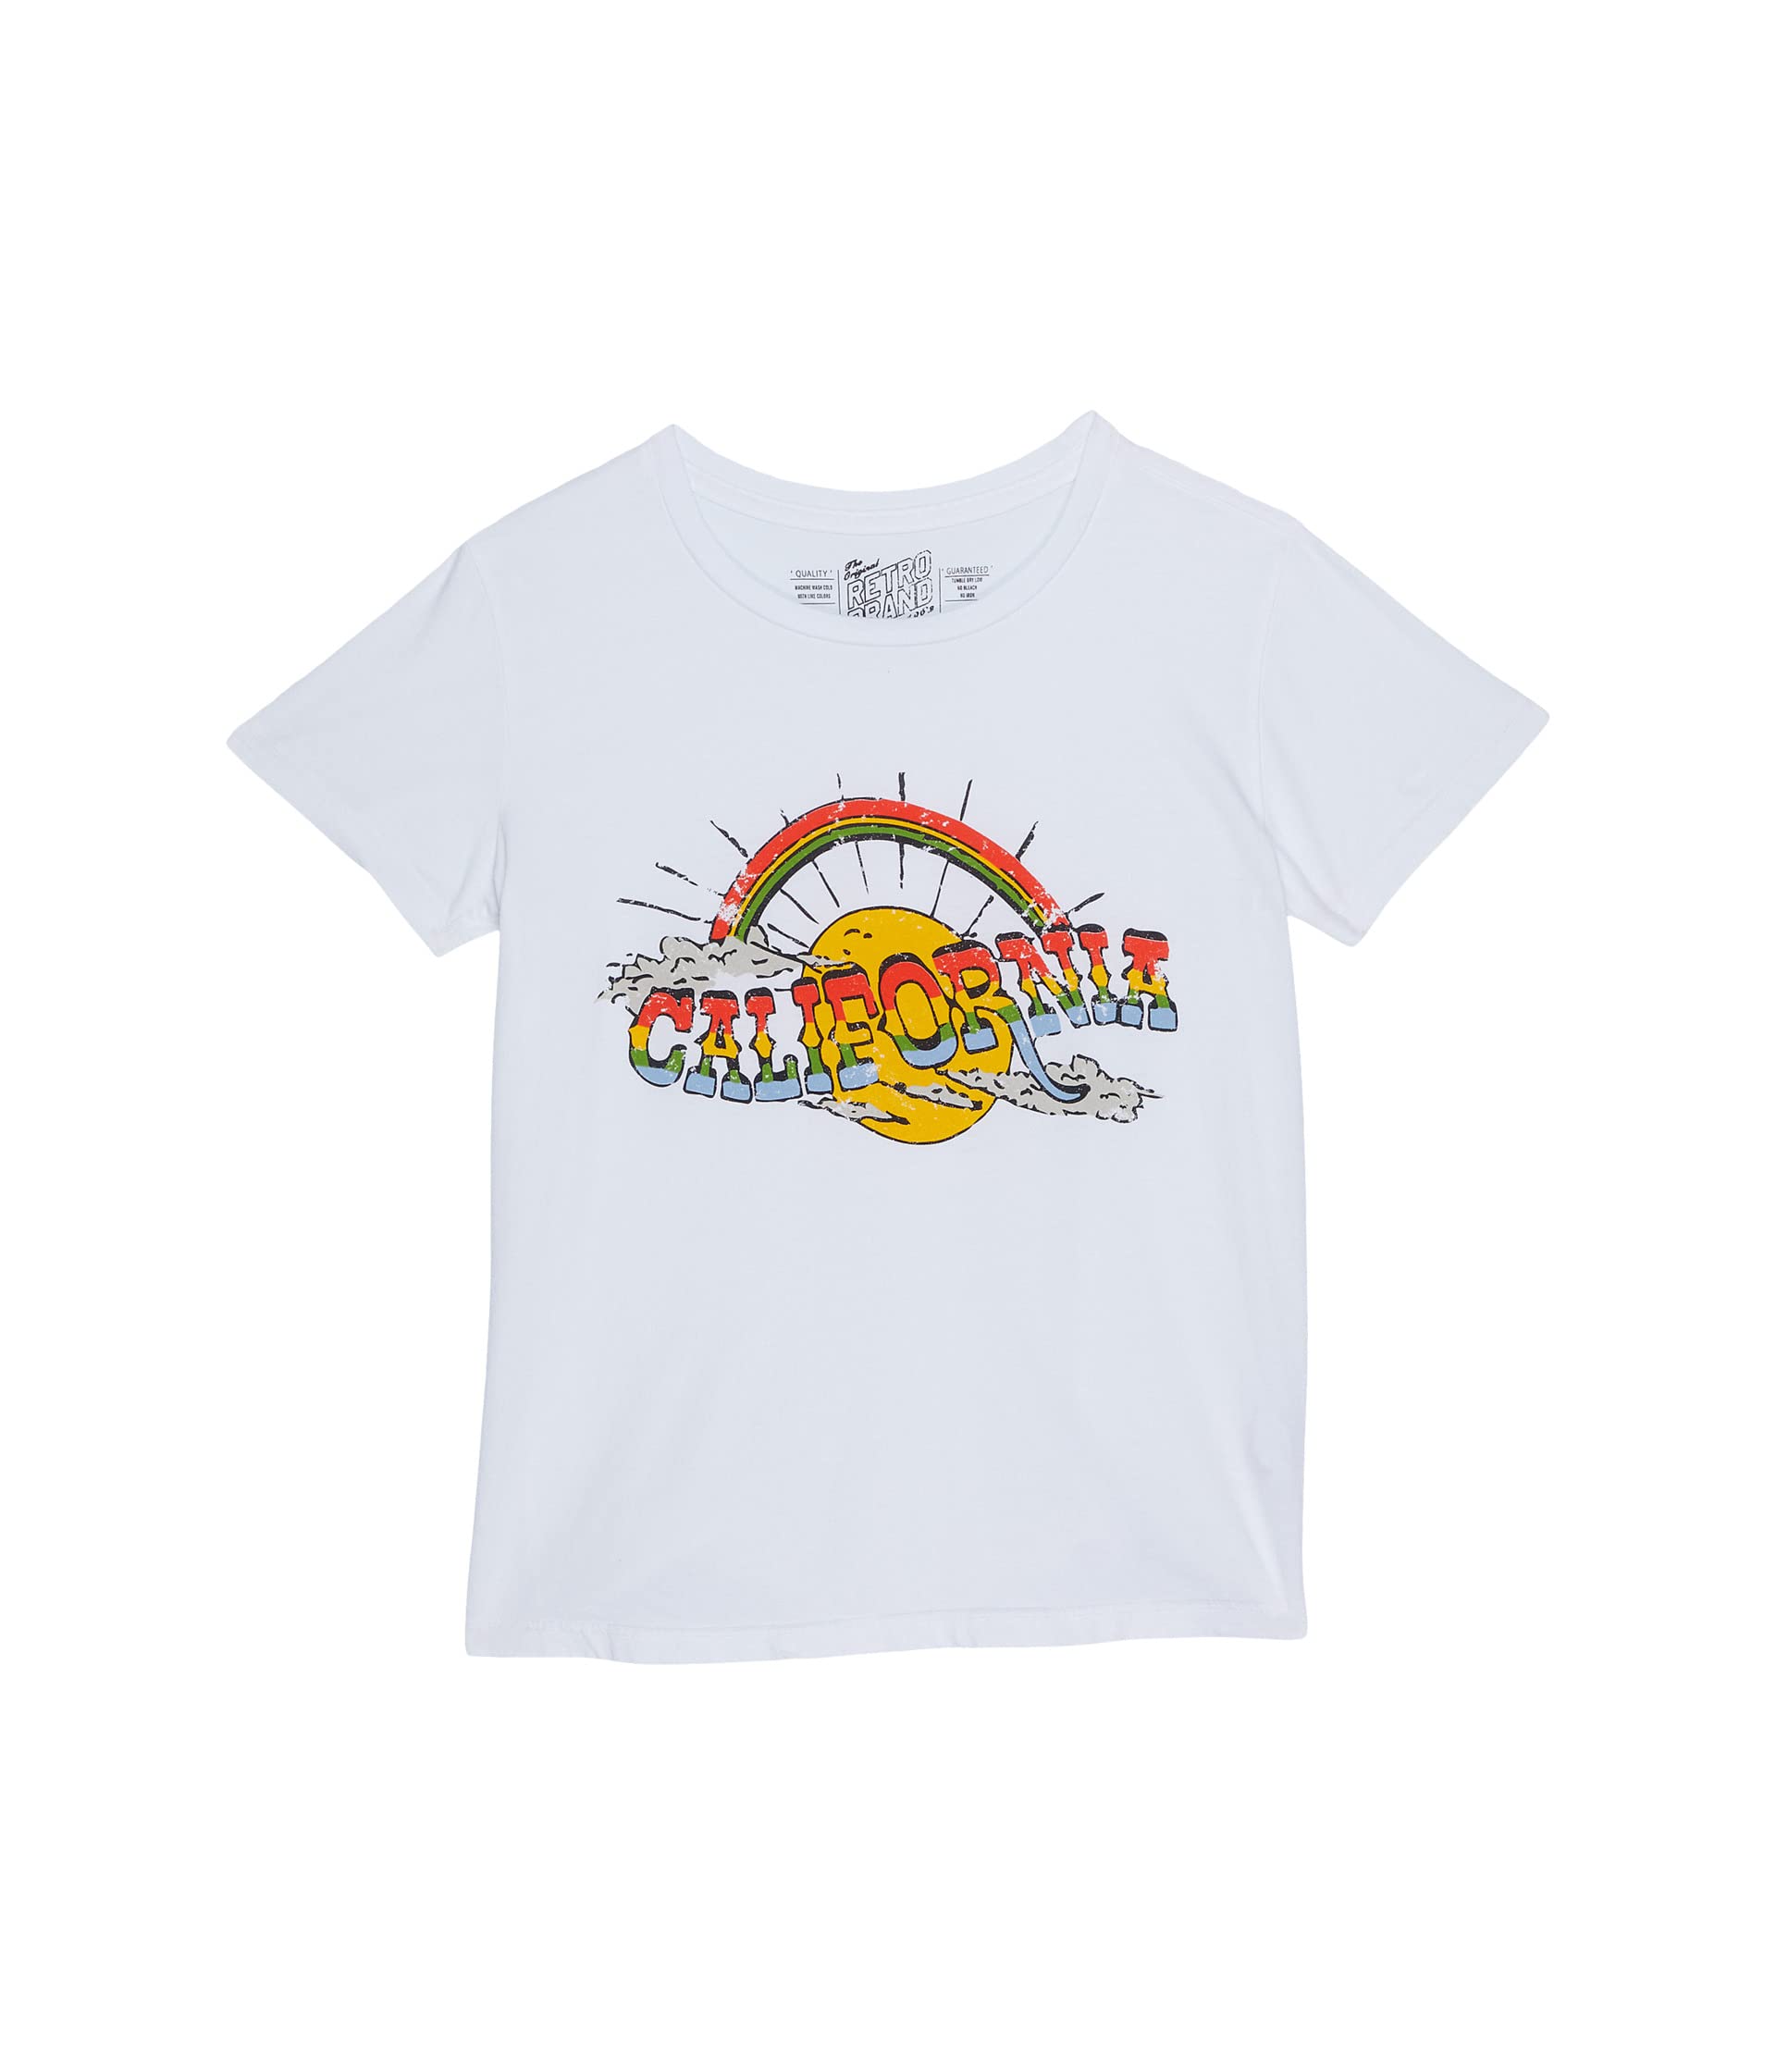 Хлопковая футболка с круглым вырезом California (для больших детей) The Original Retro Brand Kids